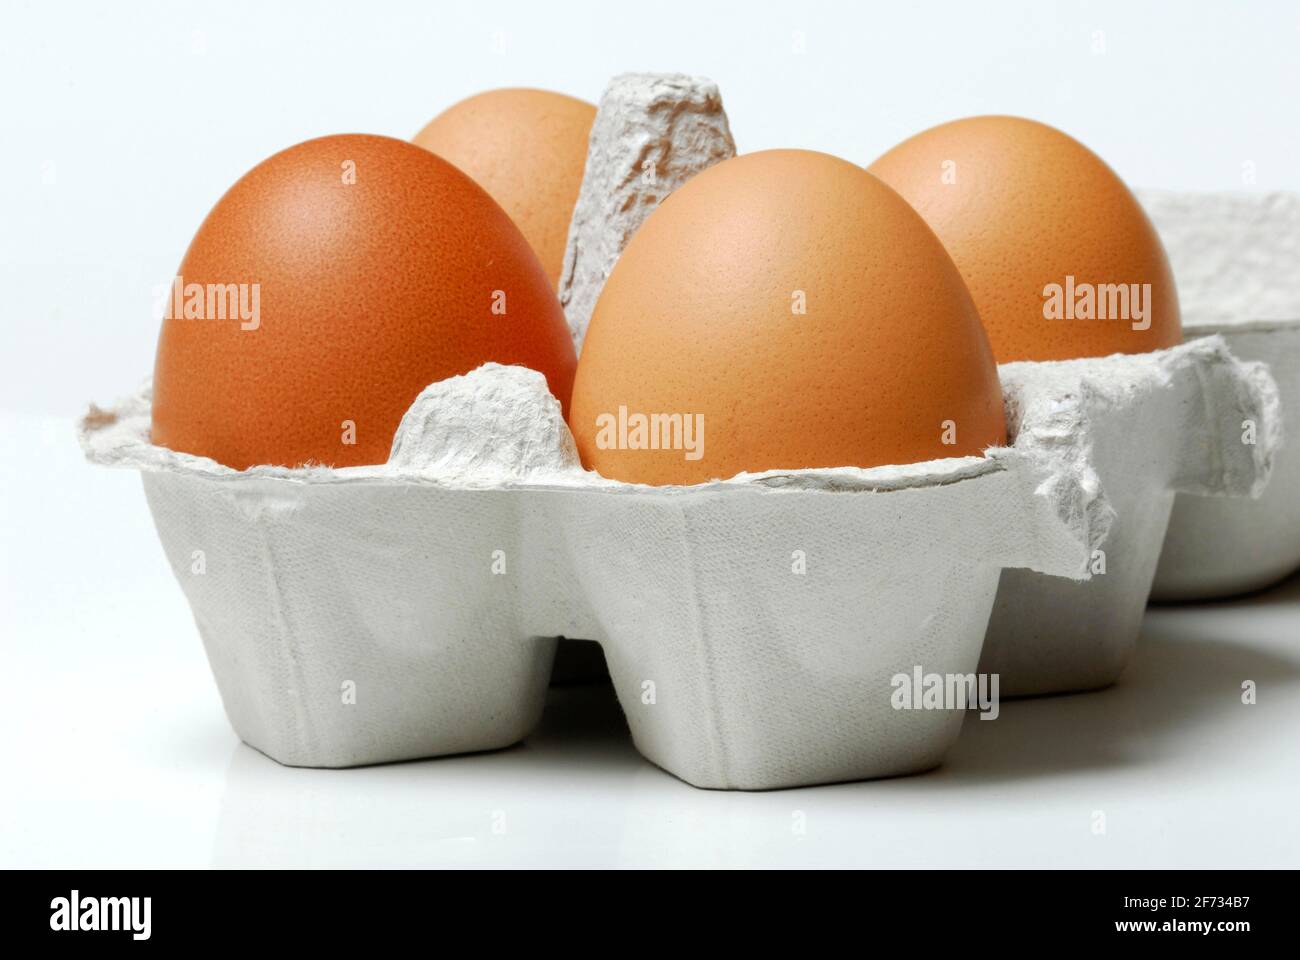 Uova di gallina marrone, uova di gallina, uova di pollo, biologico Foto Stock